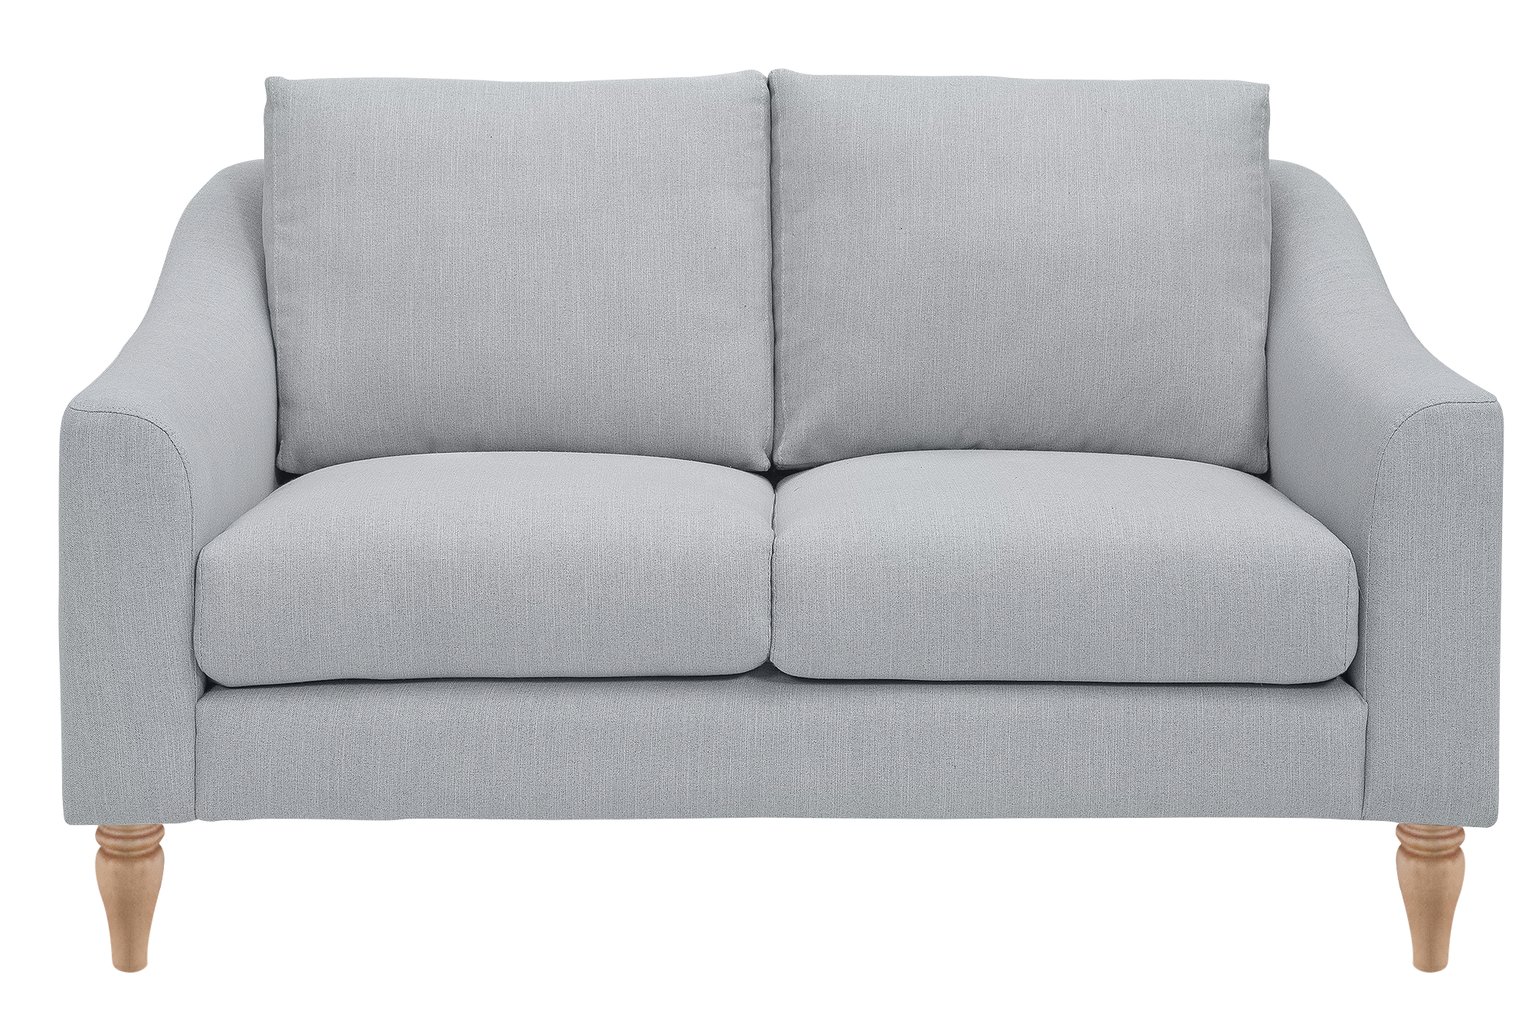 Argos Home Cameron 2 Seater Fabric Sofa - Light Grey